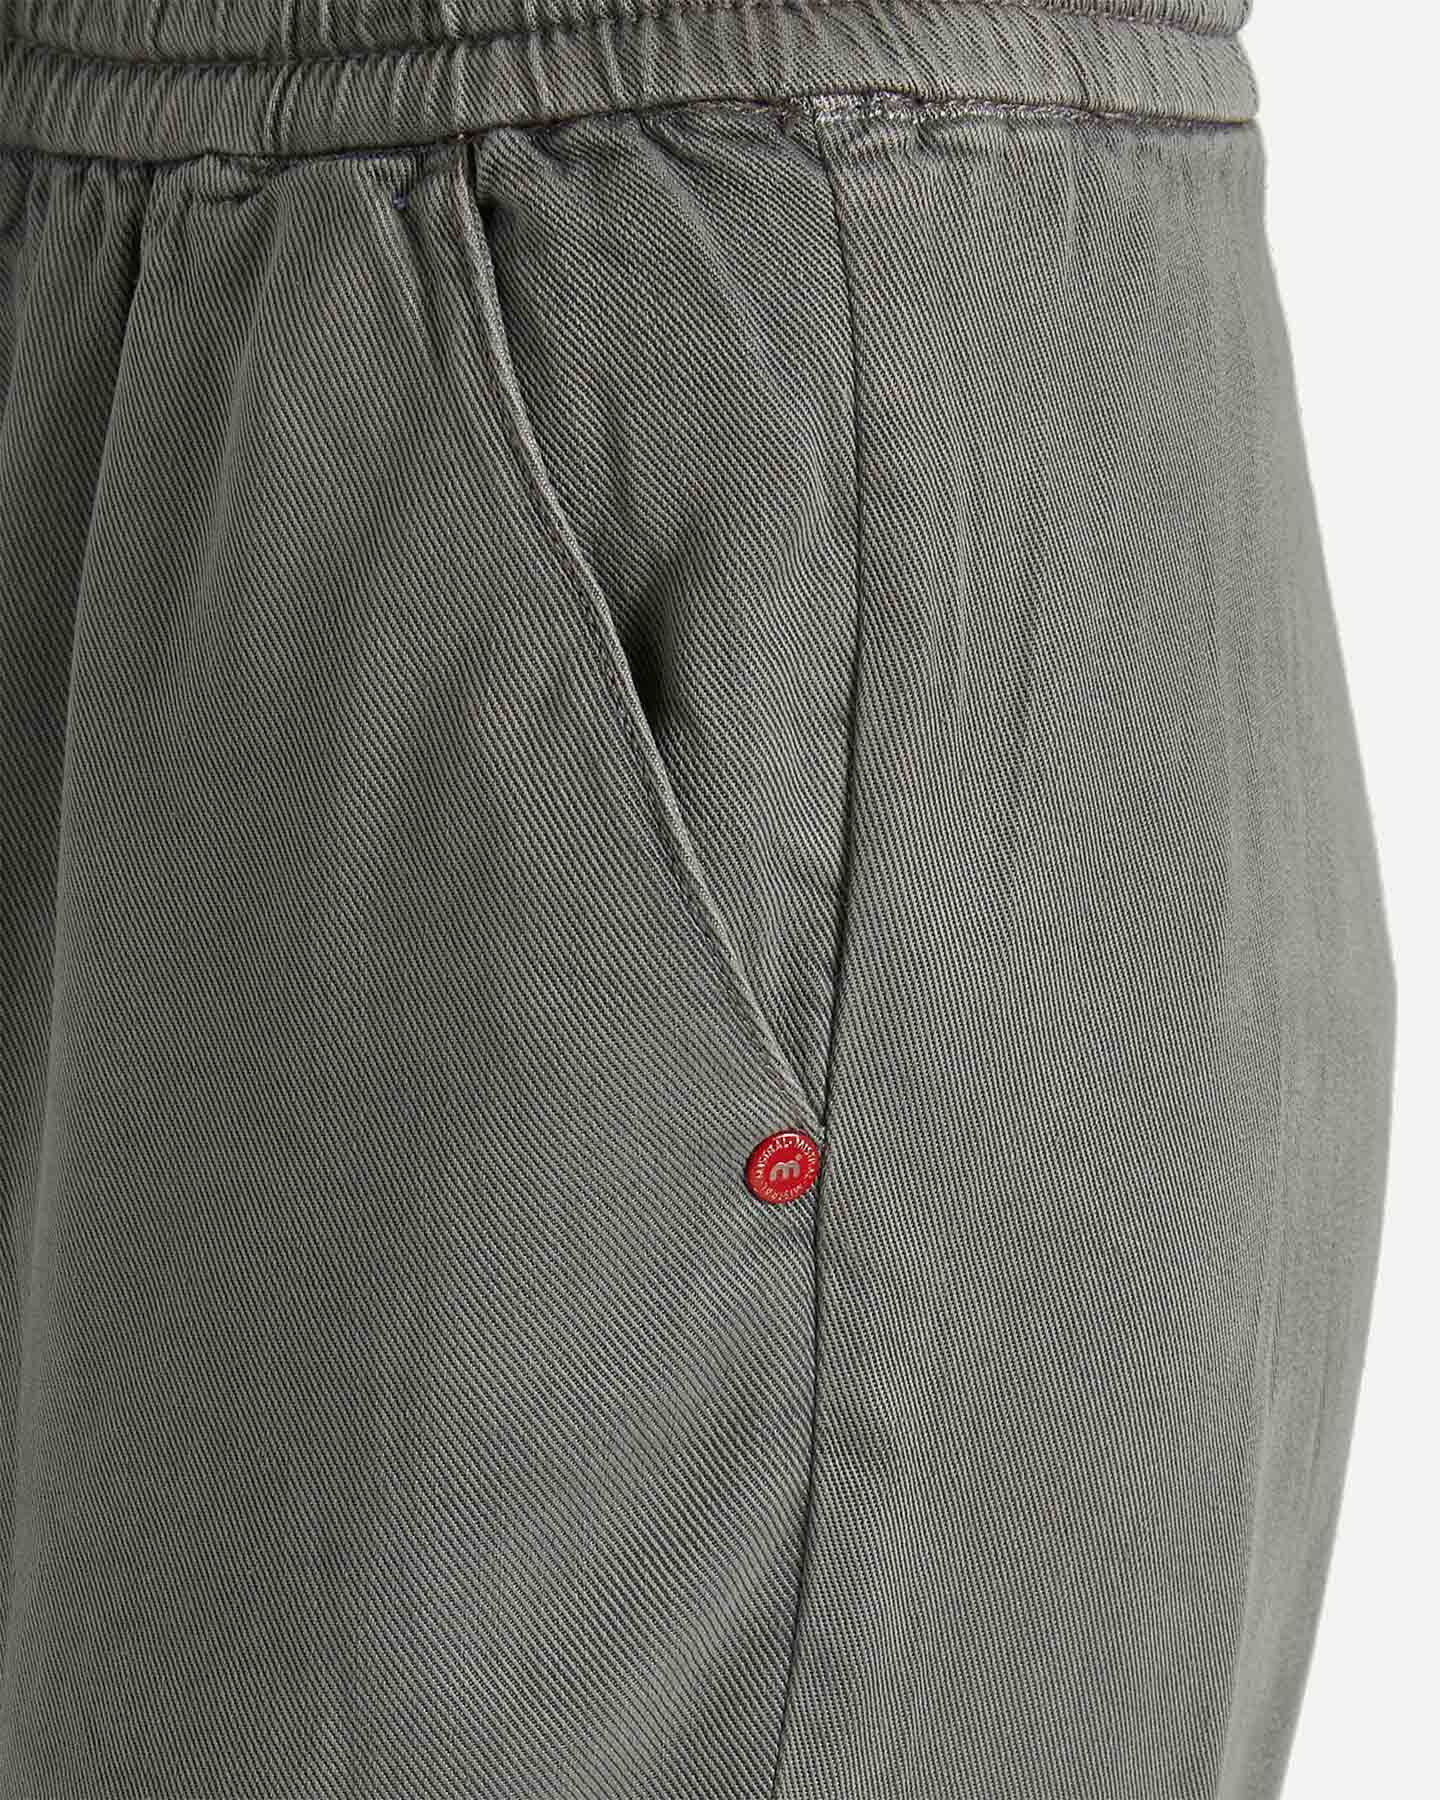  Pantalone MISTRAL JOGGER TENCEL W S4094136|845|S scatto 3